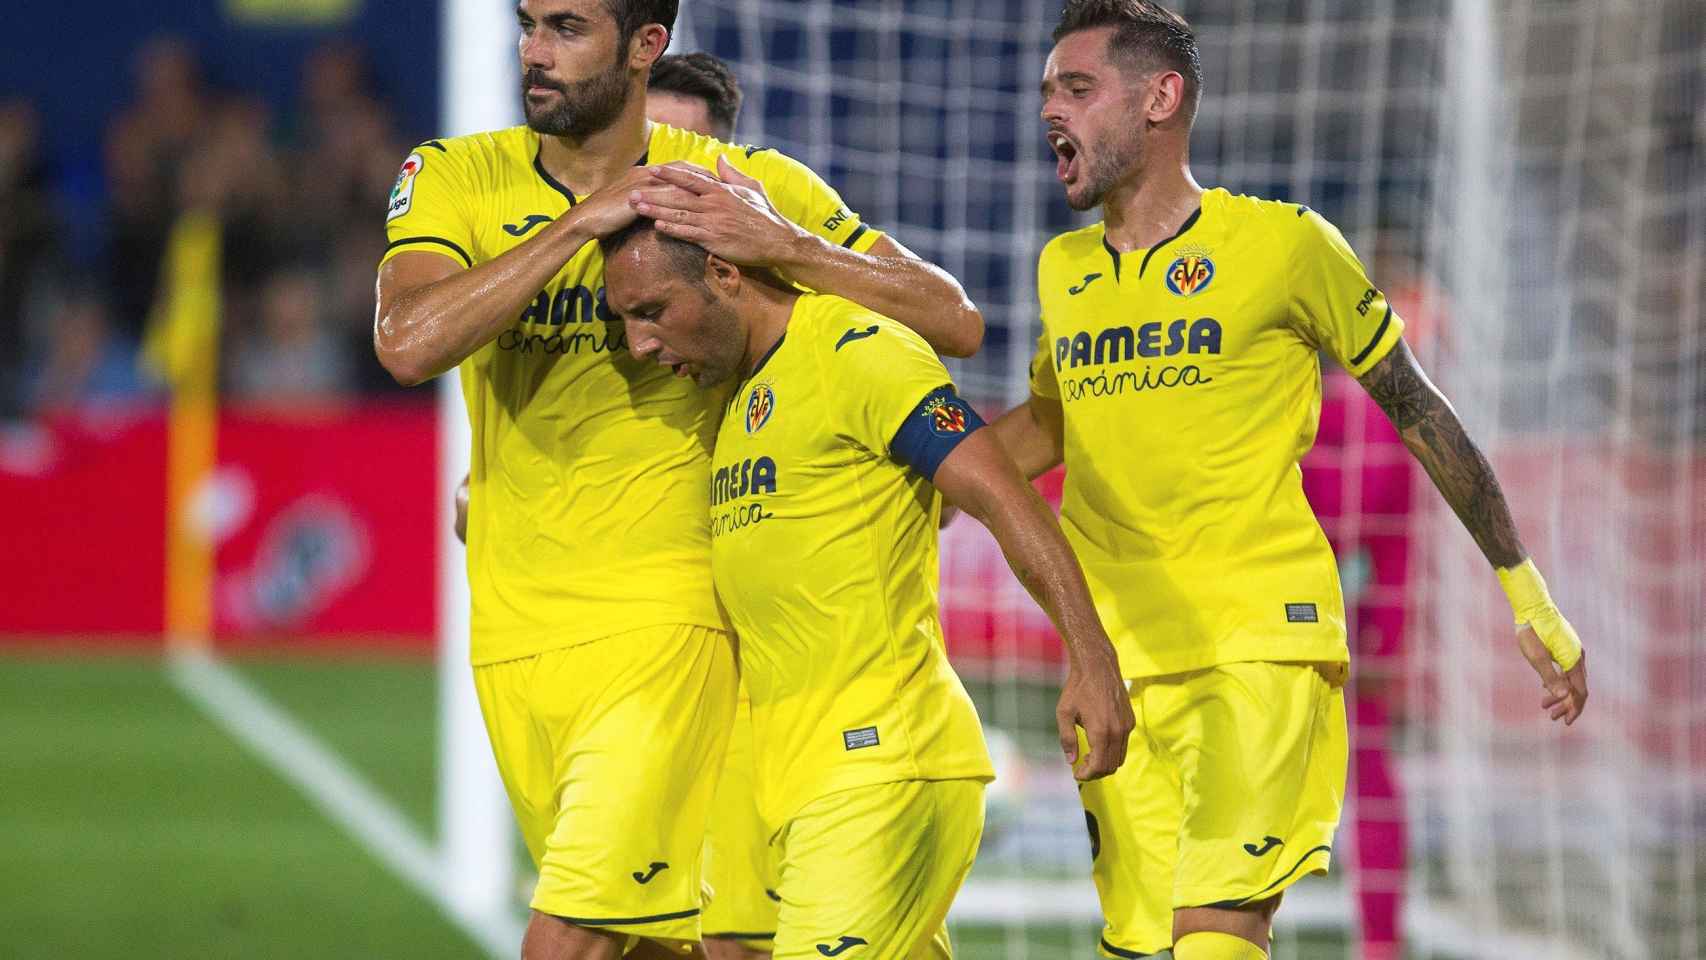 Piña del Villarreal en La Liga ante el Granada